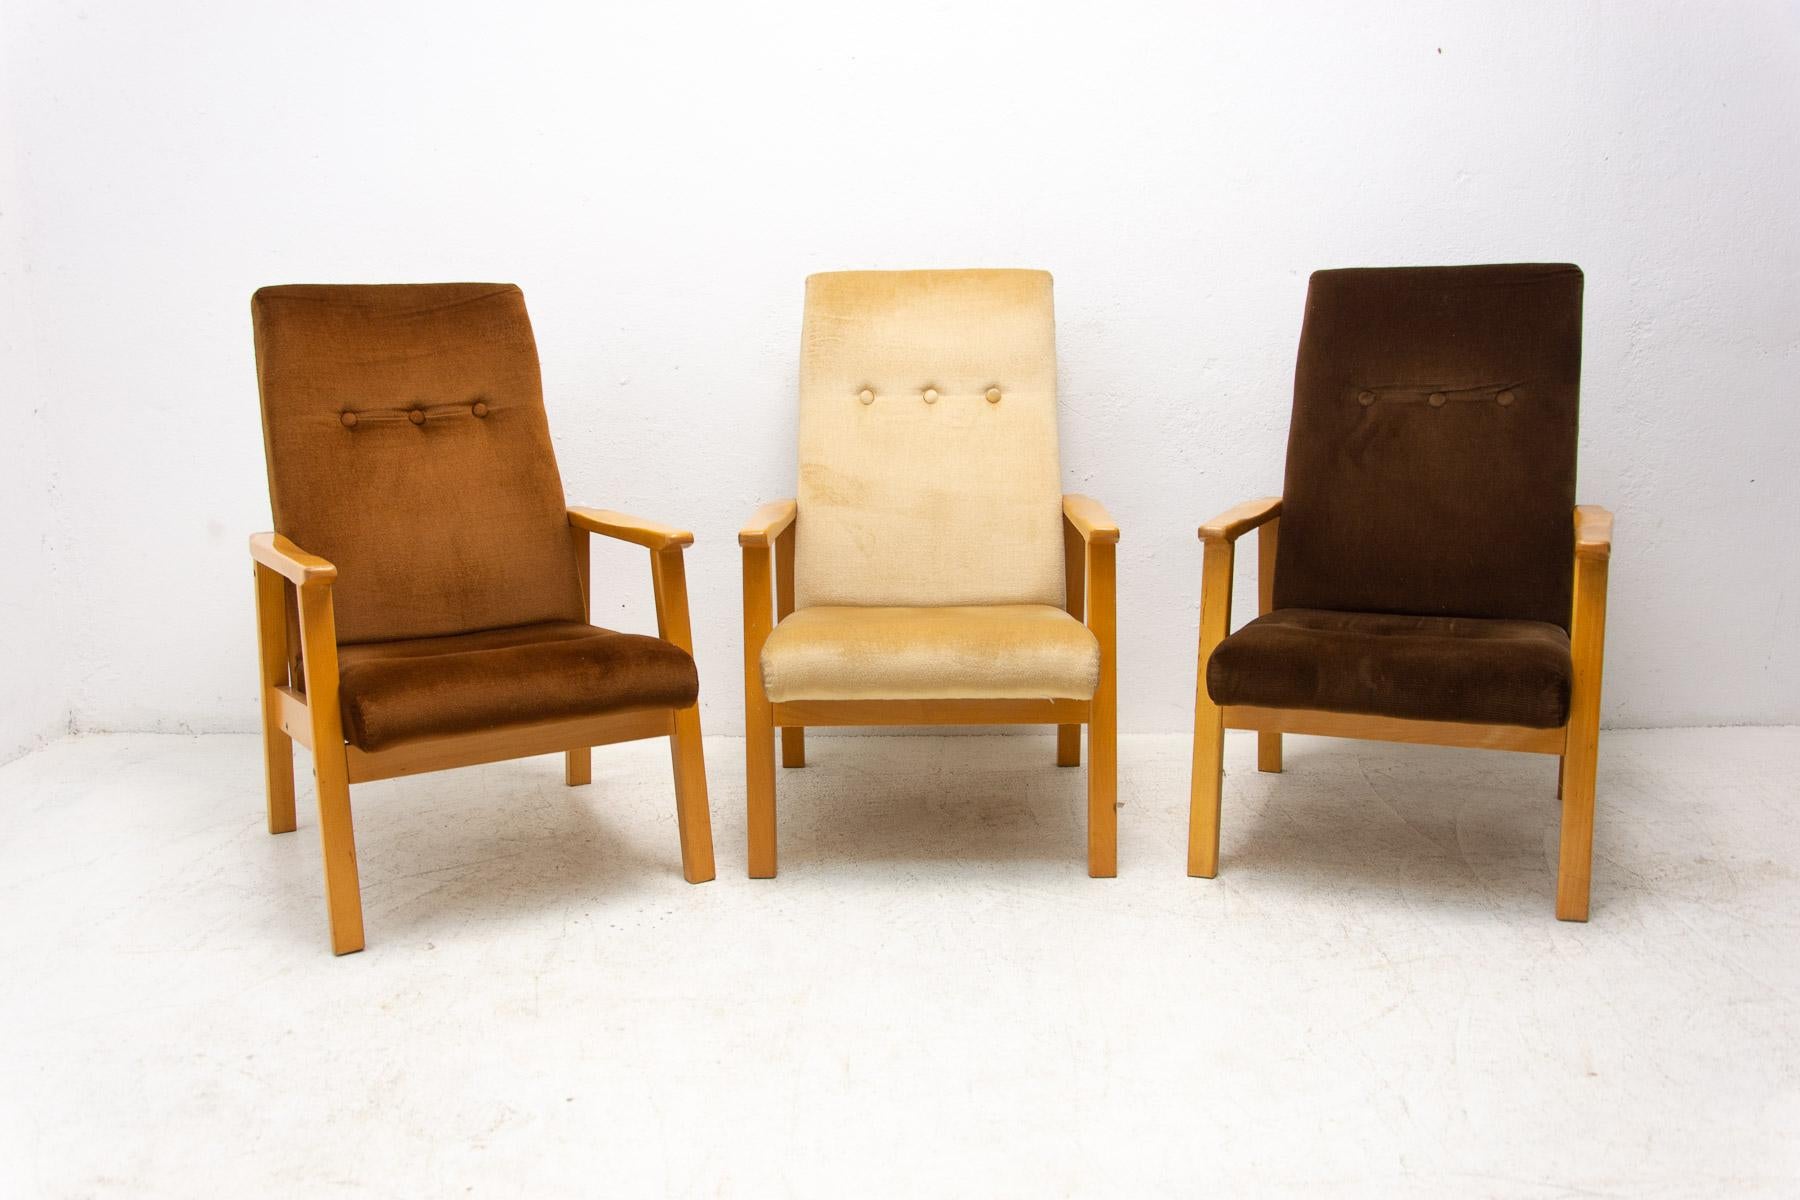 Diese Sessel im skandinavischen Stil wurden in der ehemaligen Tschechoslowakei in den 1980er Jahren hergestellt.

Die Struktur ist aus Buchenholz, die Stühle sind original gepolstert. Im Allgemeinen in sehr gutem Vintage-Zustand. Der Preis gilt für